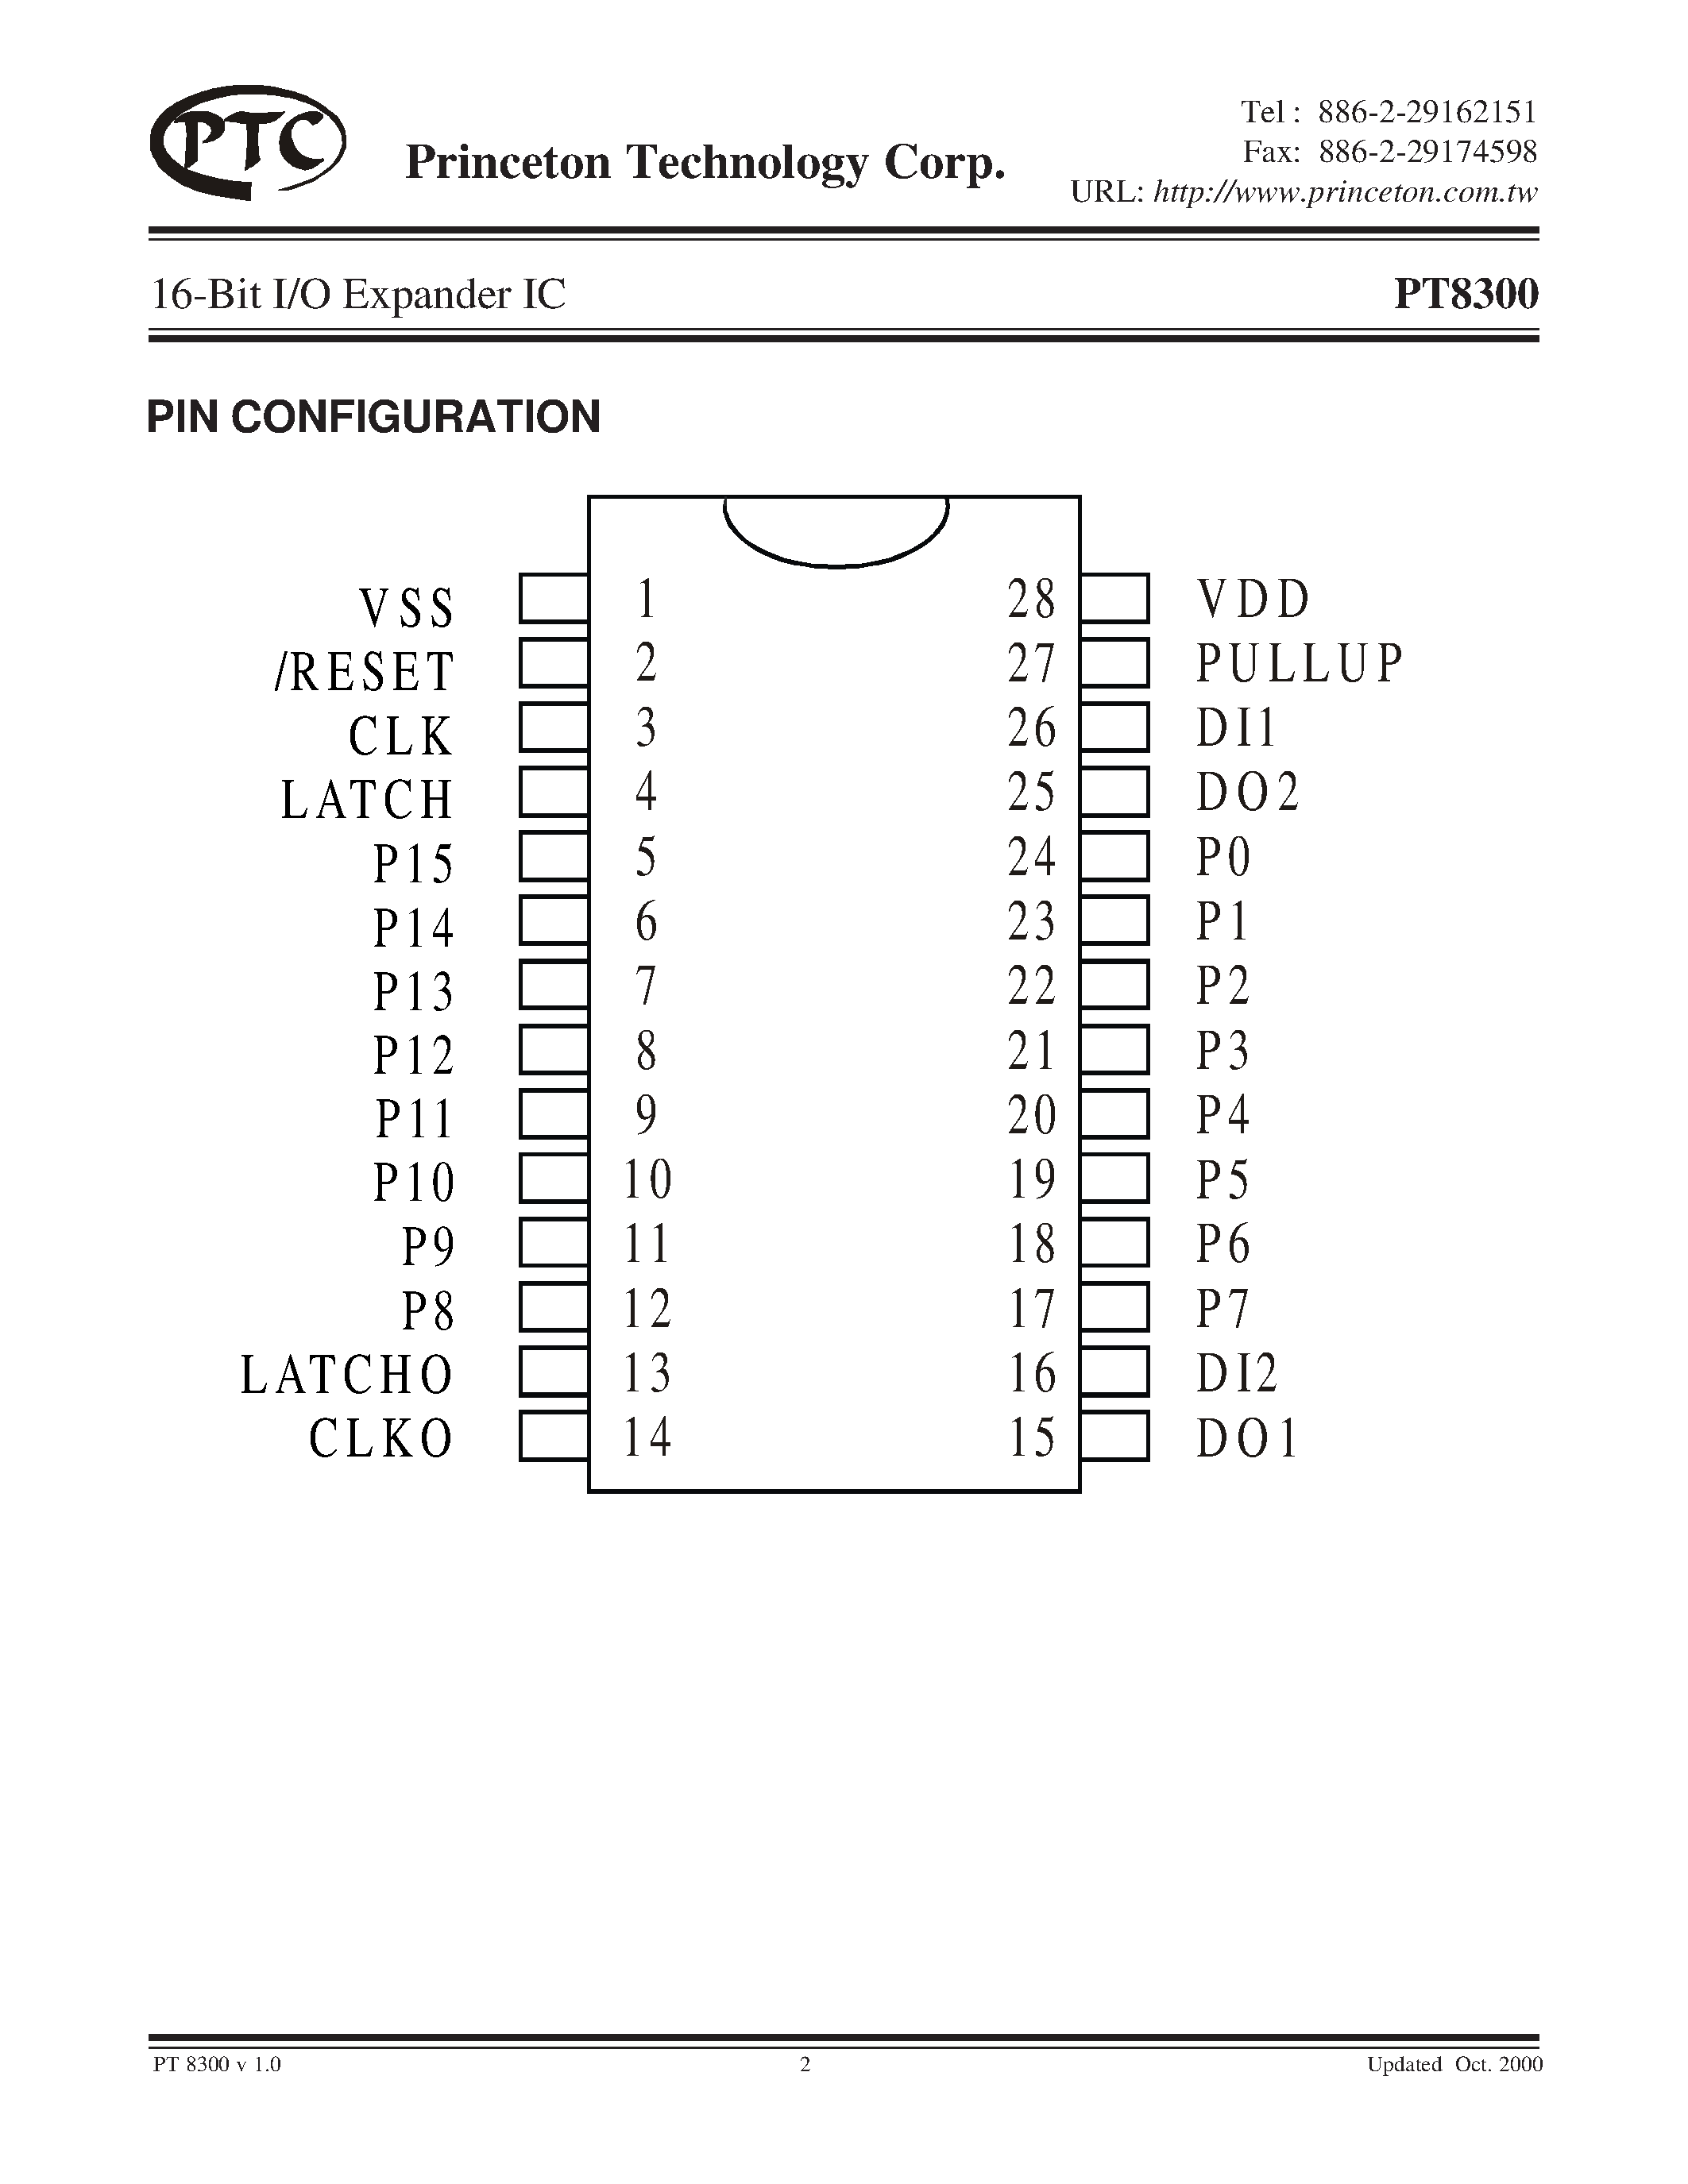 Datasheet PT8300 - 16-Bit I/O Expander IC page 2